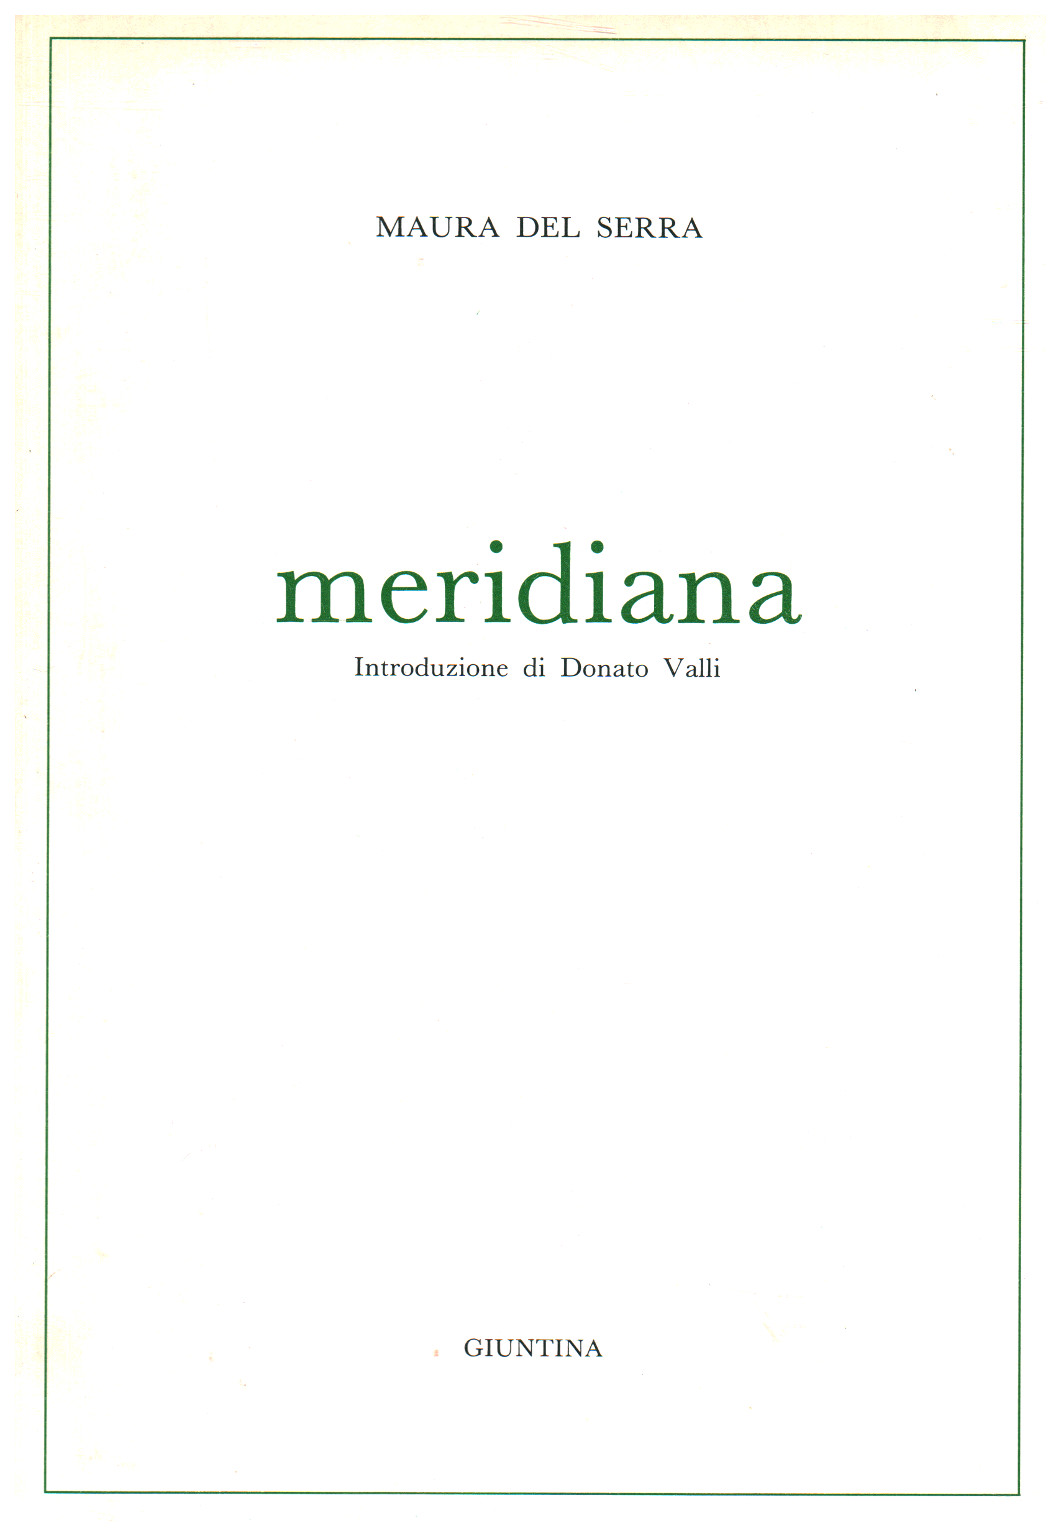 Meridiana, s.zu.